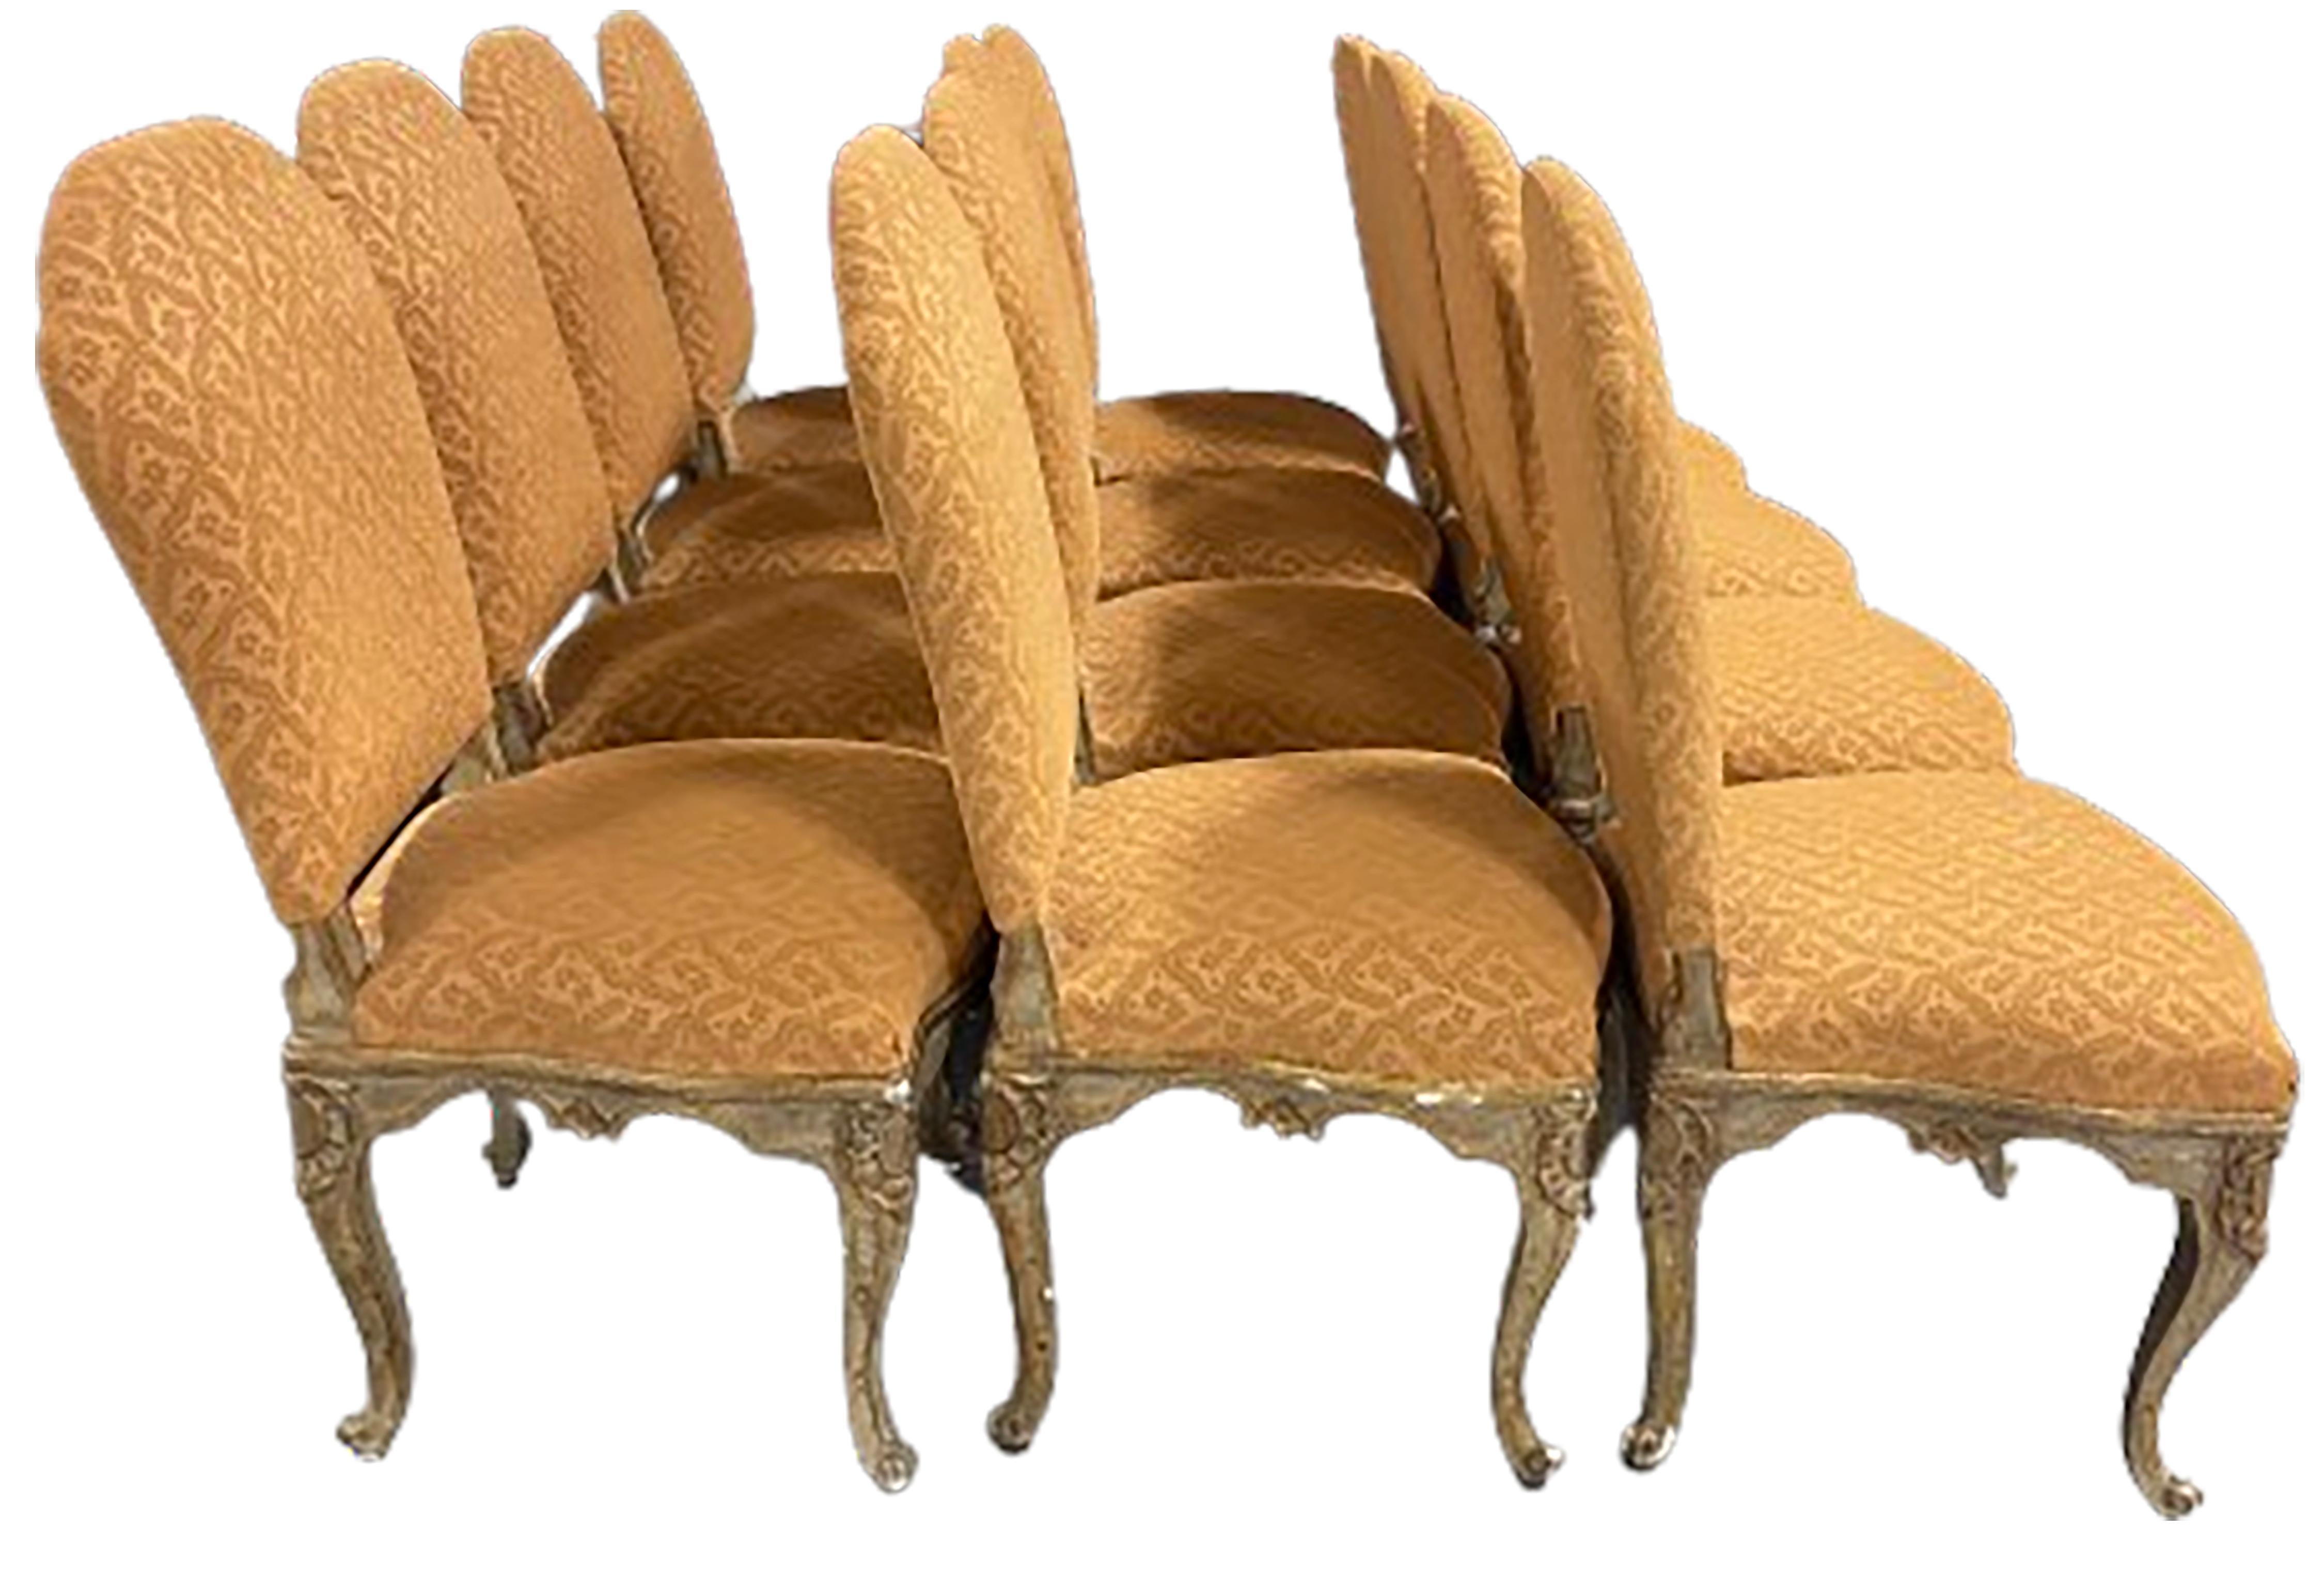 Ein eleganter Satz von zwölf Esszimmerstühlen im Stil Louis XV. Senfgoldfarbener, gepolsterter Stoff mit Cabriole-Holzbeinen. Leicht abgewinkelte Rückenlehnen und ein  dunkler, vergoldeter Sockel. 

In gutem Zustand. Alters- und gebrauchsbedingte